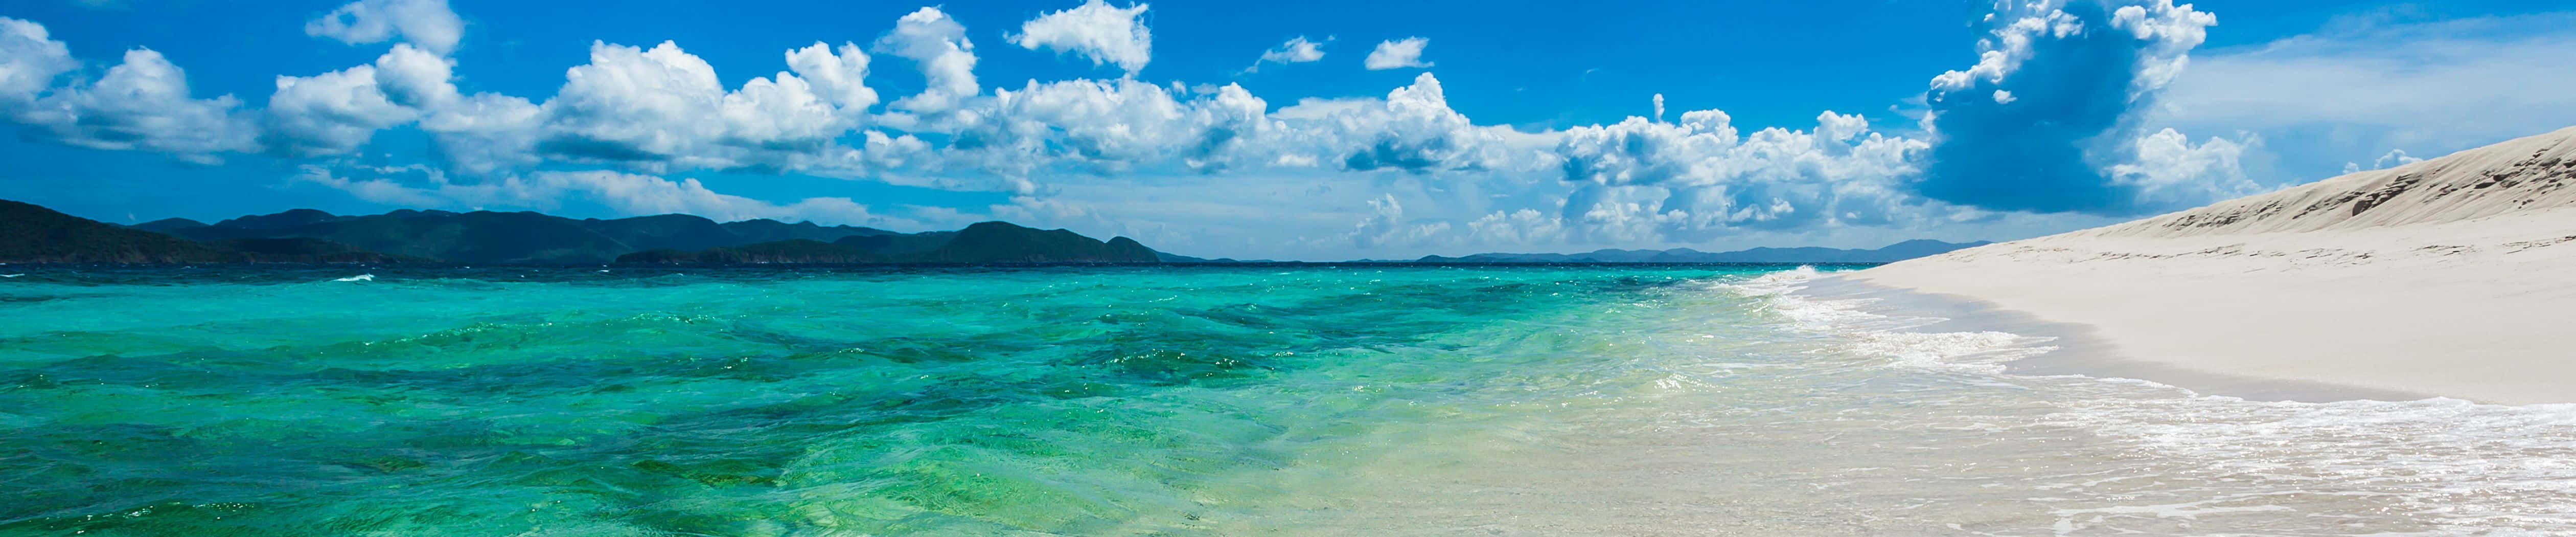 Faszinierendessandy Cay Als Hintergrundbild Für Den Pixel 3 Monitor